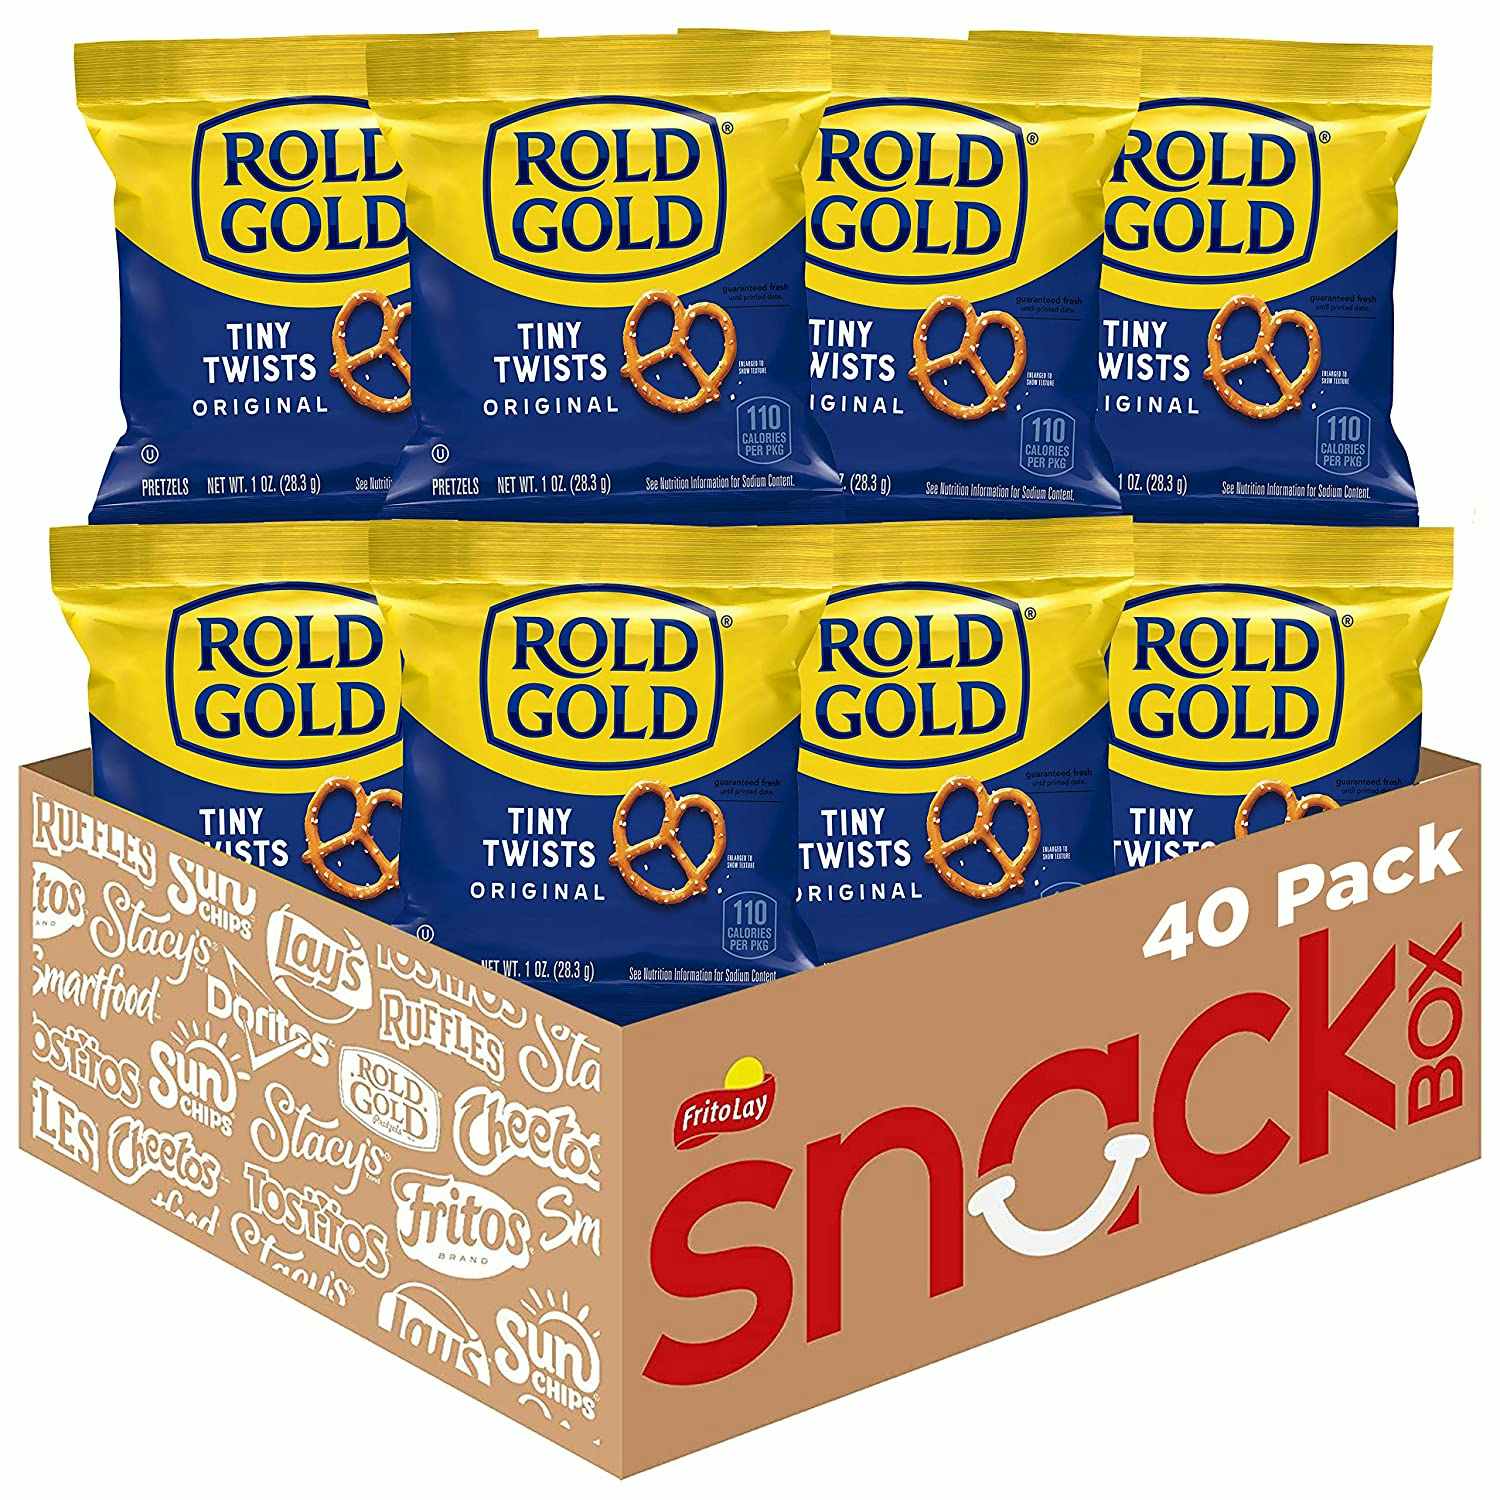 A box of Rold Gold pretzels.